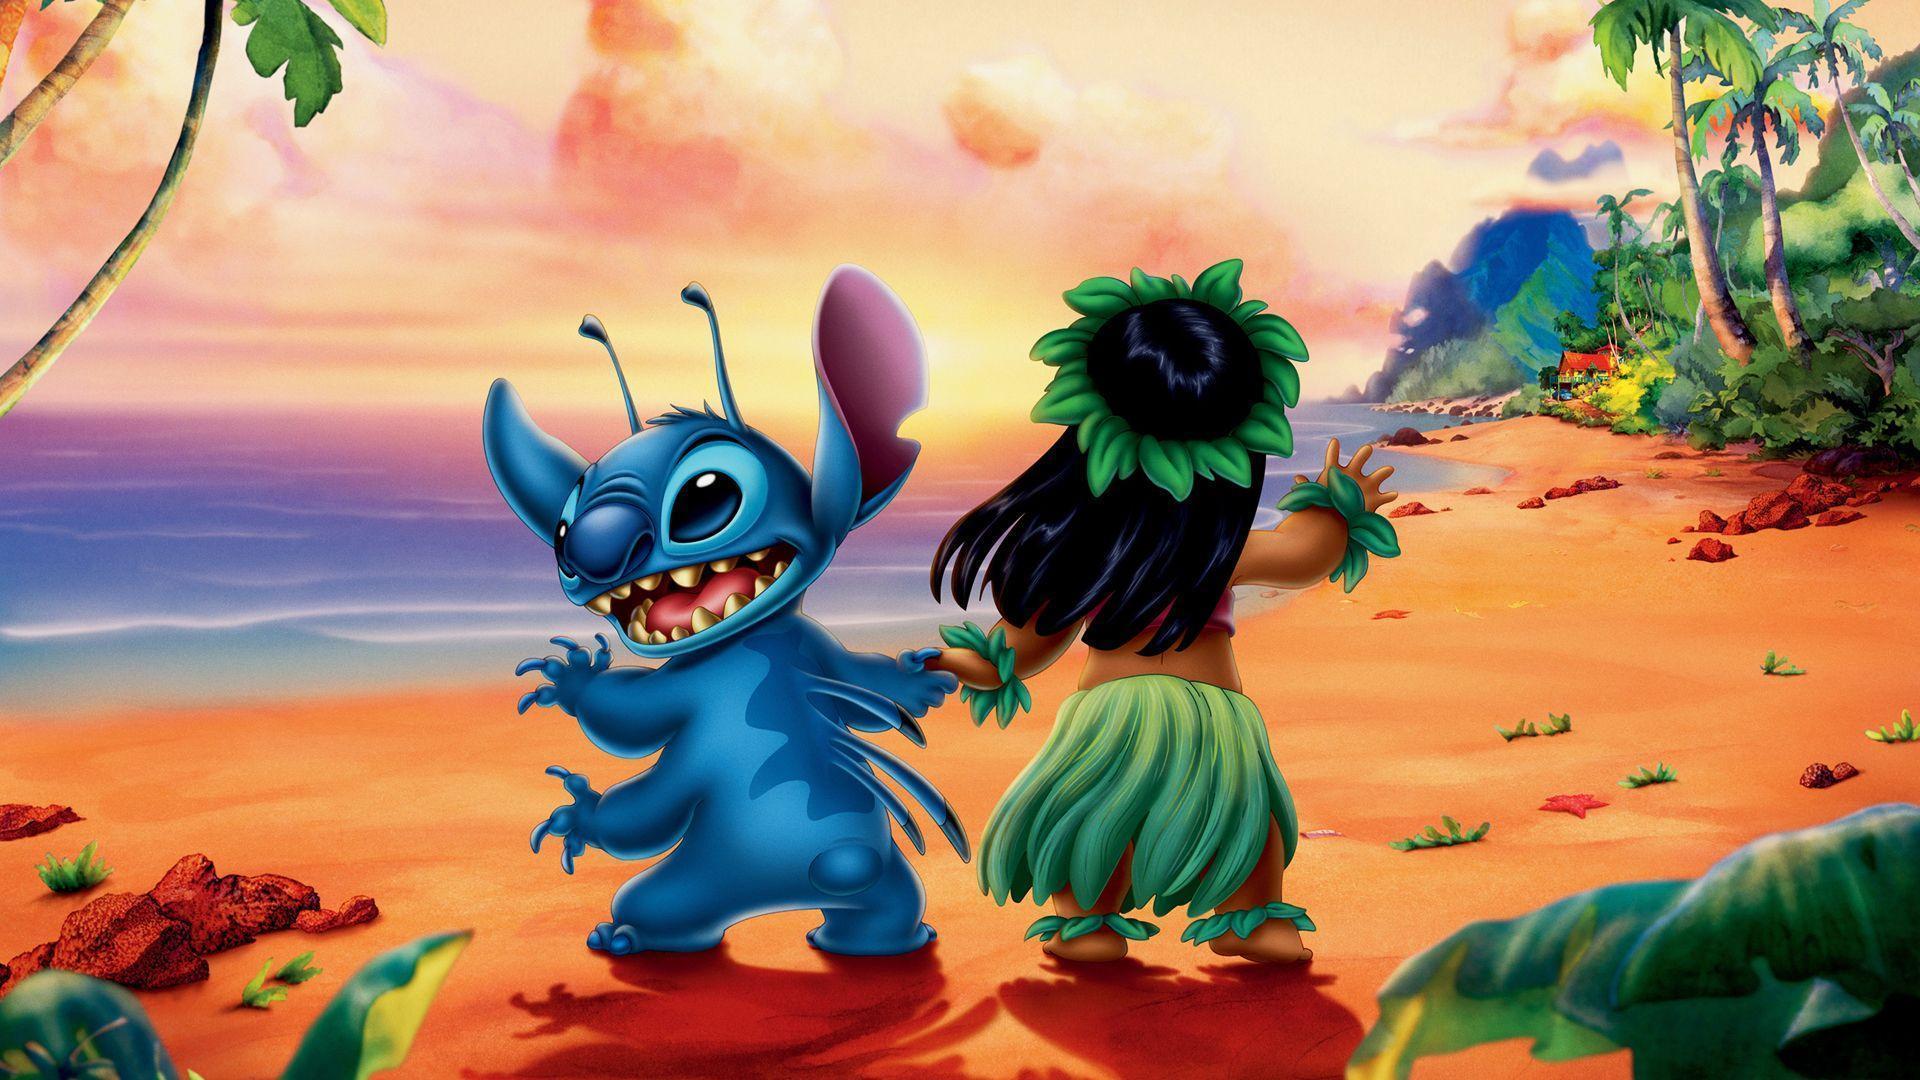 Lilo và Stitch luôn là cặp đôi huyền thoại trong thế giới hoạt hình. Nếu bạn cần tìm kiếm những bức hình Lilo and Stitch wallpapers HD high resolution thì bộ sưu tập này sẽ khiến bạn rất hài lòng. Chất lượng hình ảnh sắc nét và độ phân giải cao sẽ giúp bạn thưởng thức trọn vẹn vẻ đẹp của cặp đôi này.